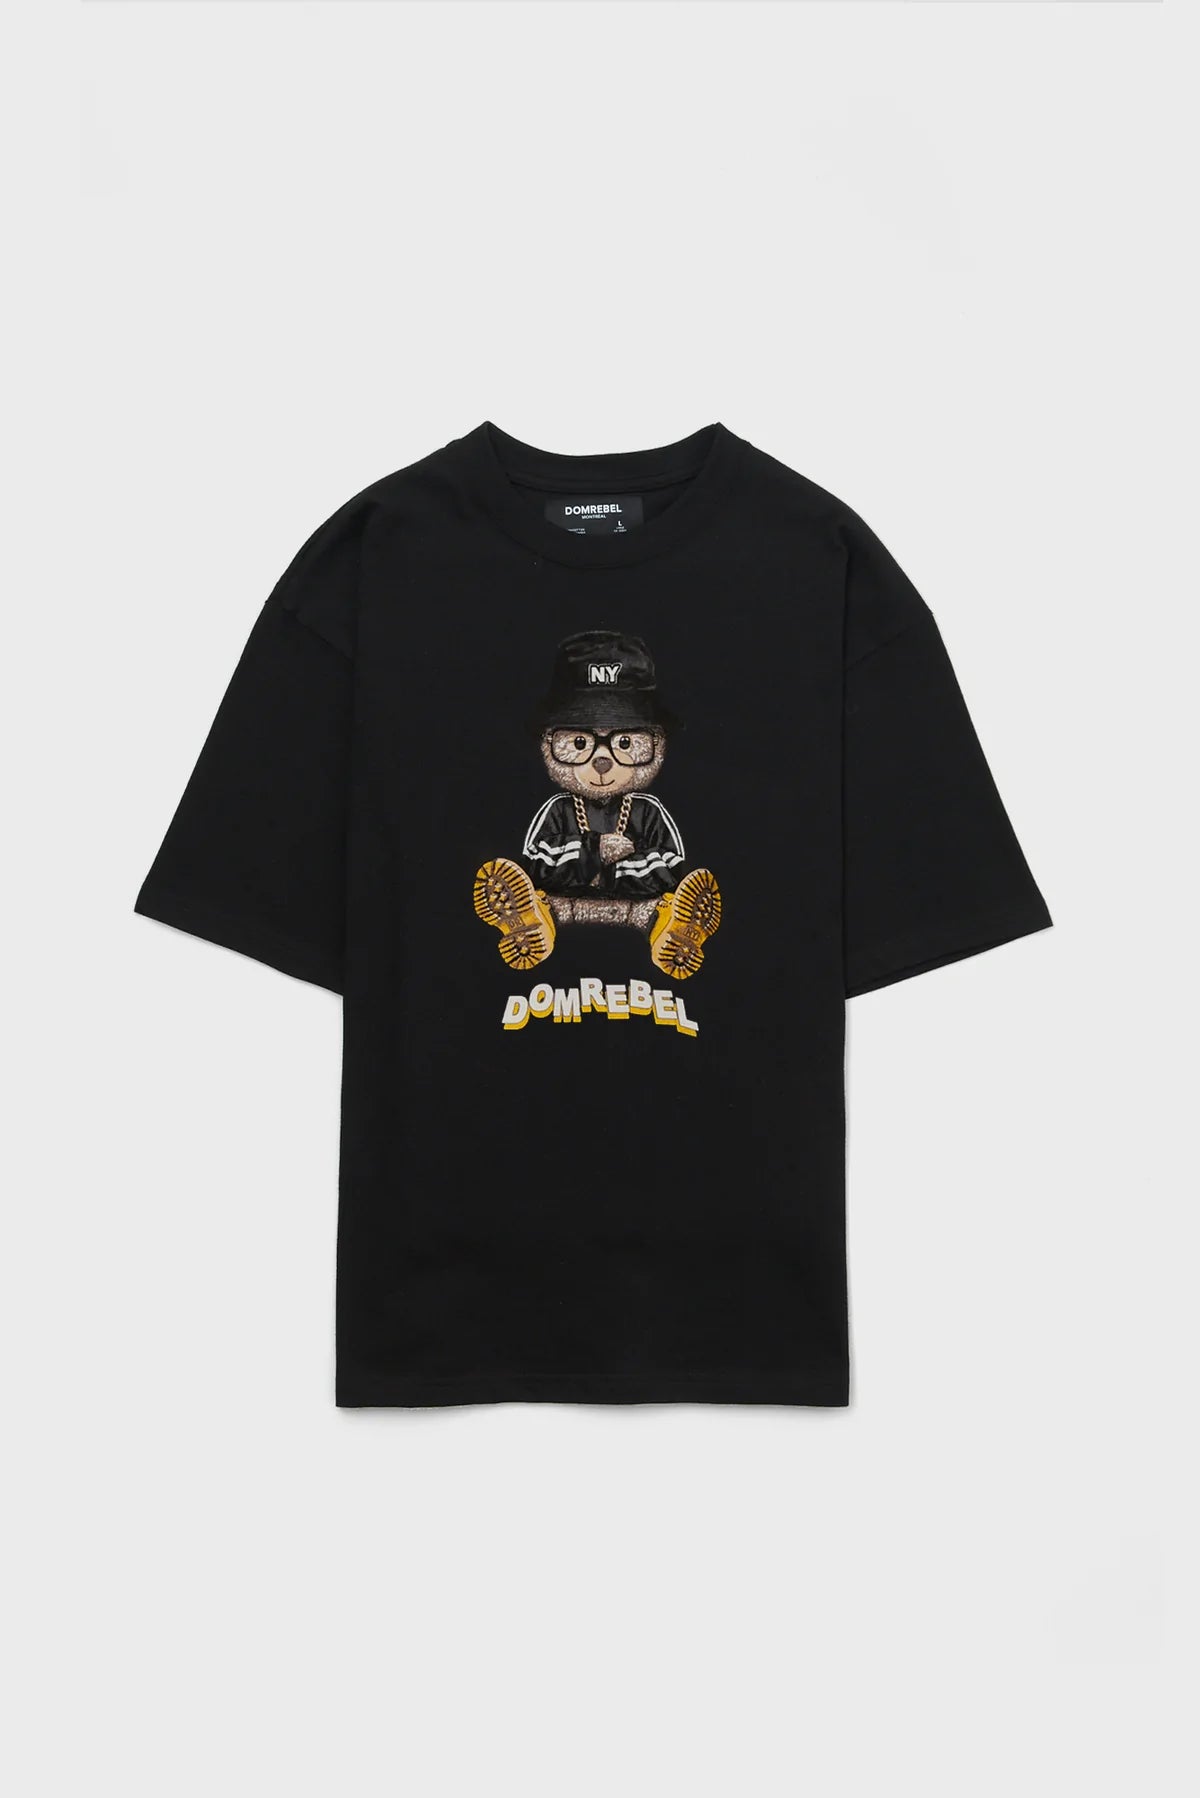 NY Bear T-Shirt Black